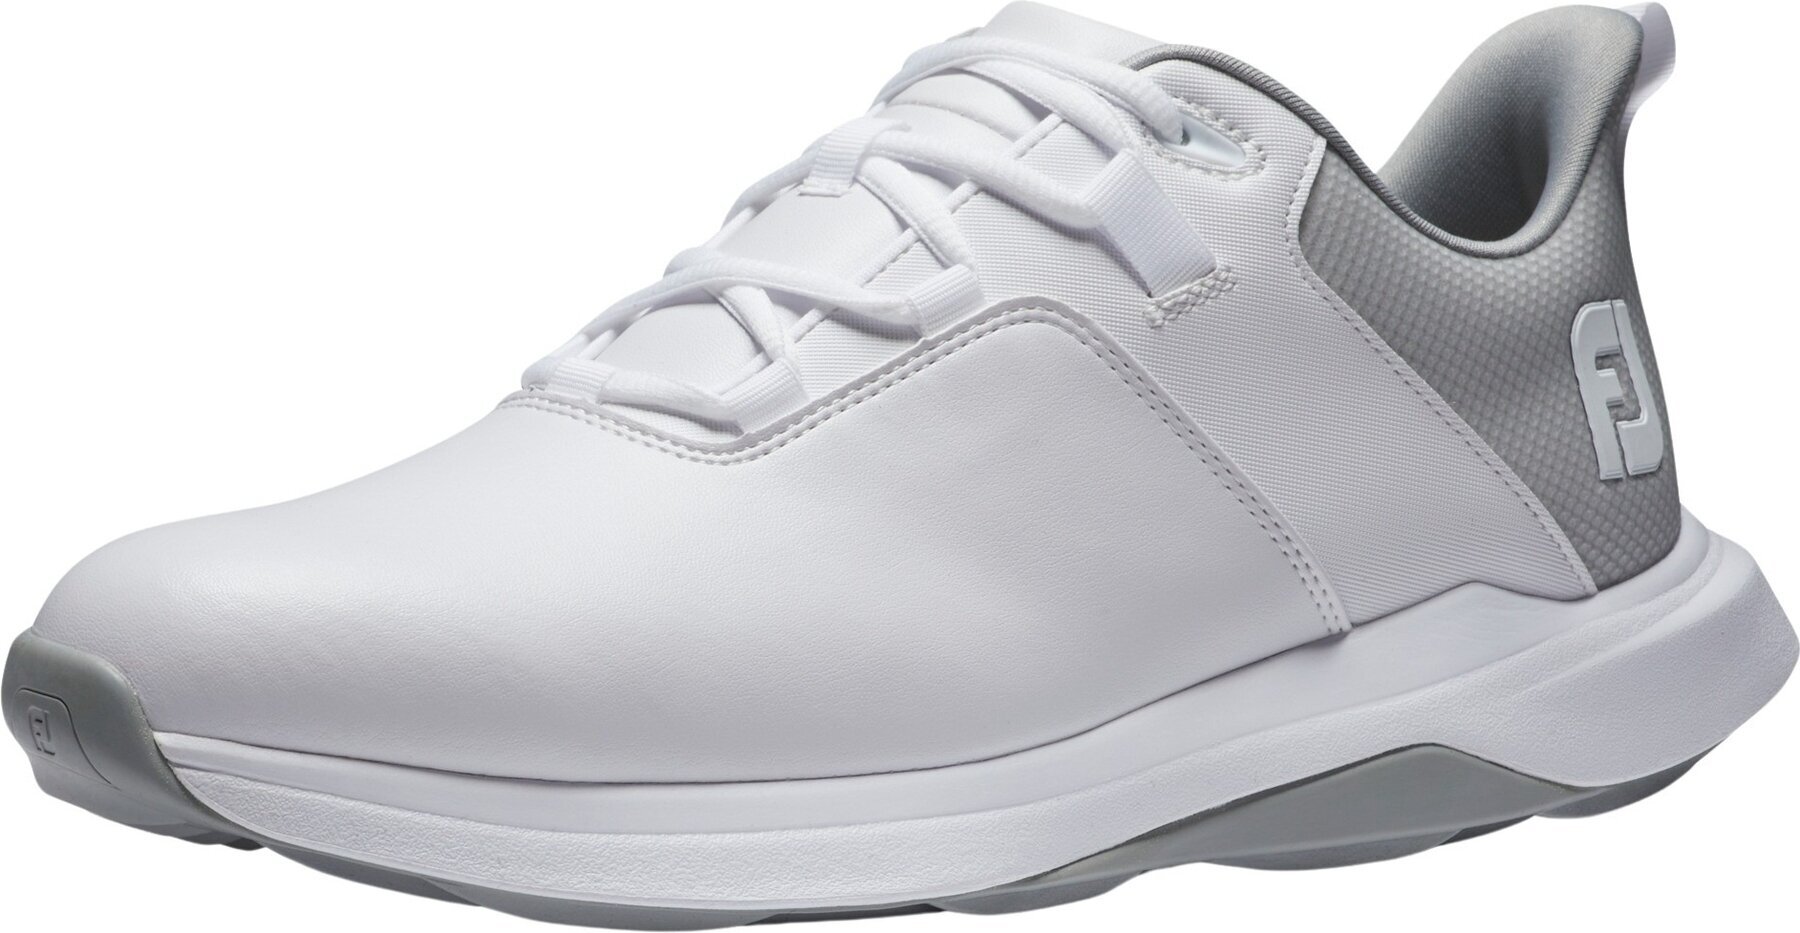 Chaussures de golf pour hommes Footjoy ProLite Mens Golf Shoes White/Grey 41